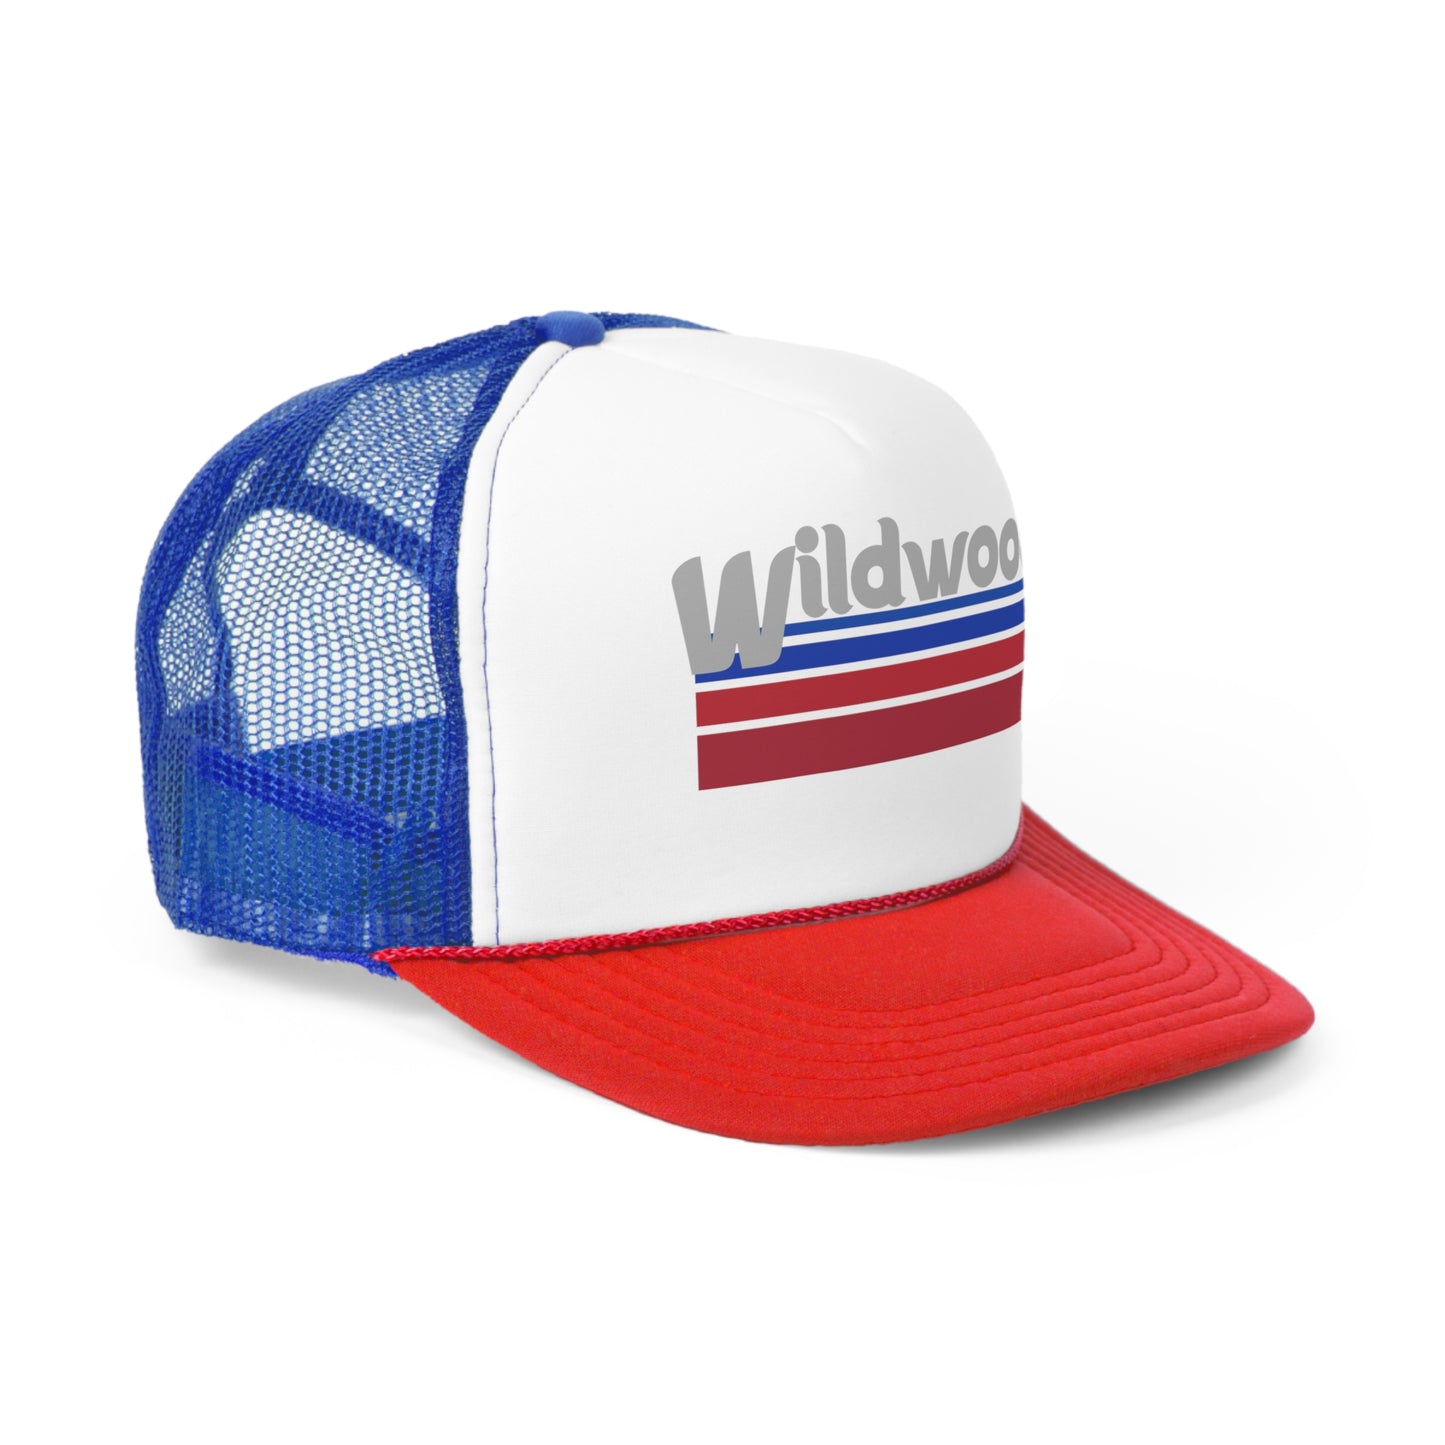 Wildwood Retro Phillies Font Hat Trucker Caps